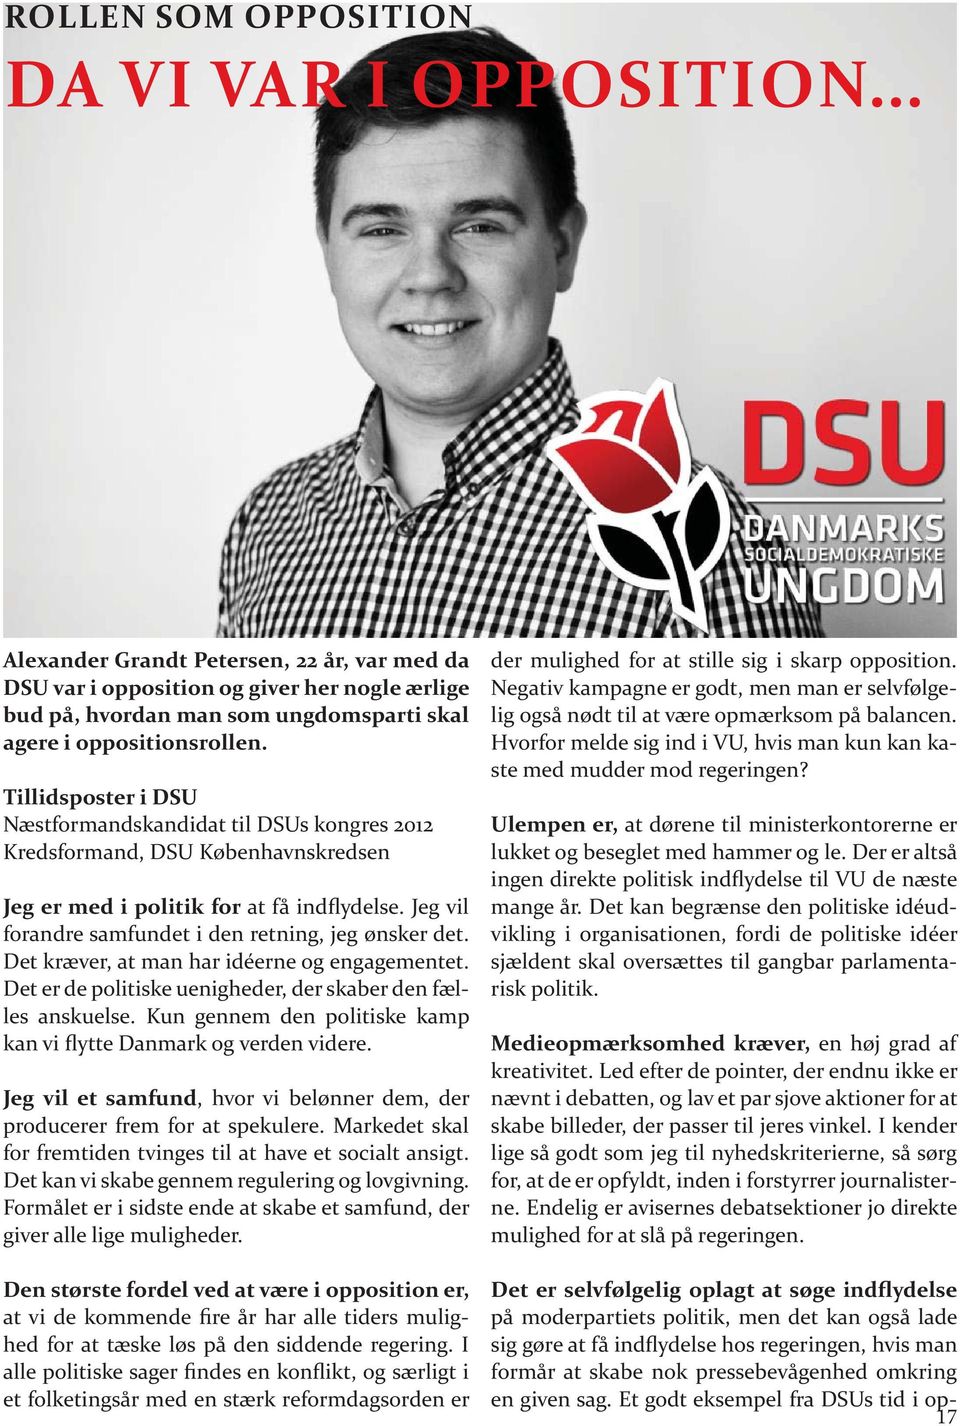 Tillidsposter i DSU Næstformandskandidat til DSUs kongres 2012 Kredsformand, DSU Københavnskredsen Jeg er med i politik for at få indflydelse. Jeg vil forandre samfundet i den retning, jeg ønsker det.